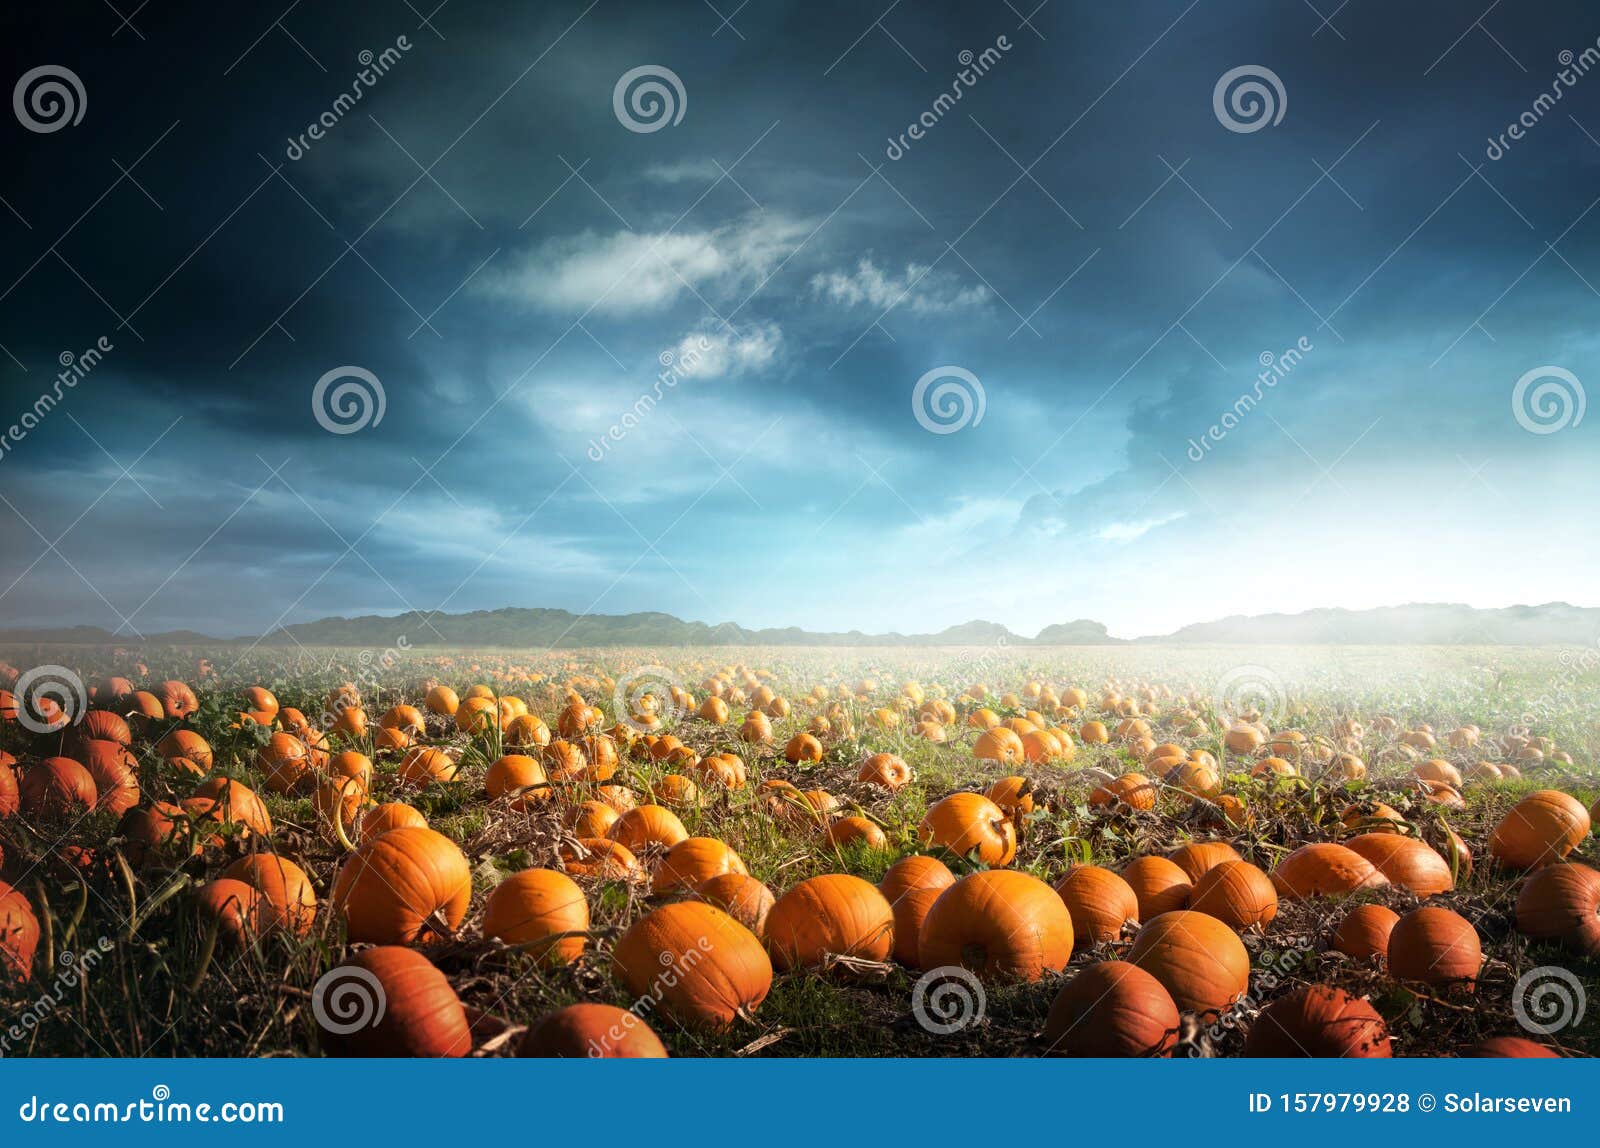 spooky halloween pumpkin field